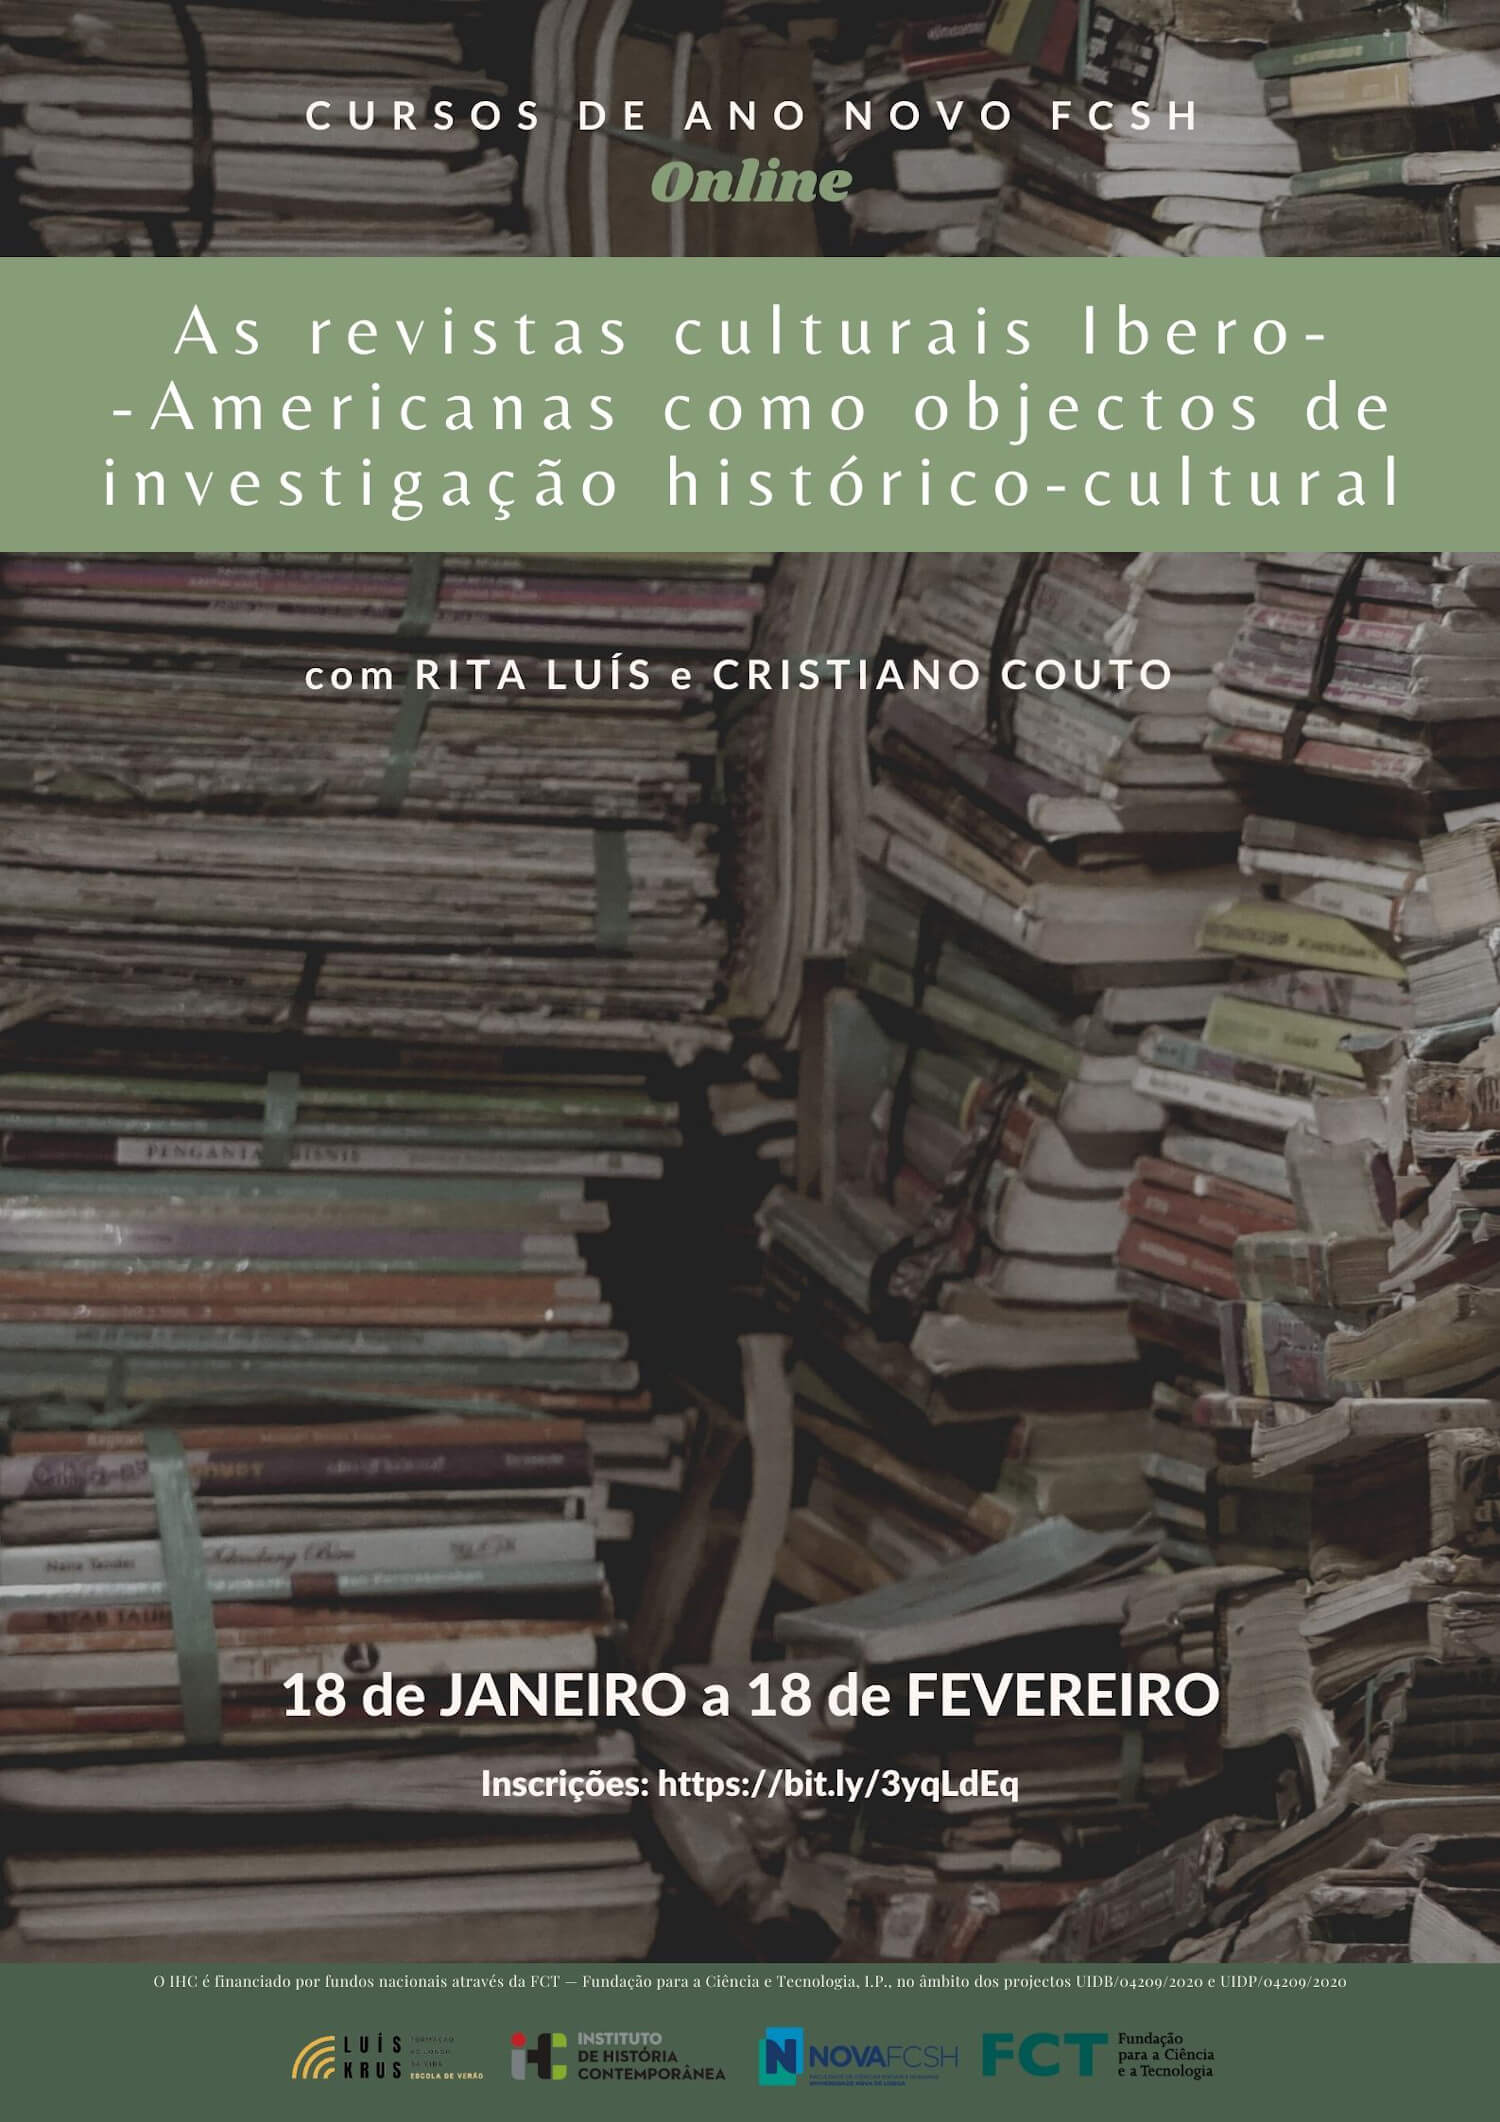 Cartaz do curso "As revistas culturais Ibero-Americanas como objetos de investigação histórico-cultural" da edição 2022 dos Cursos de Ano Novo da NOVA FCSH